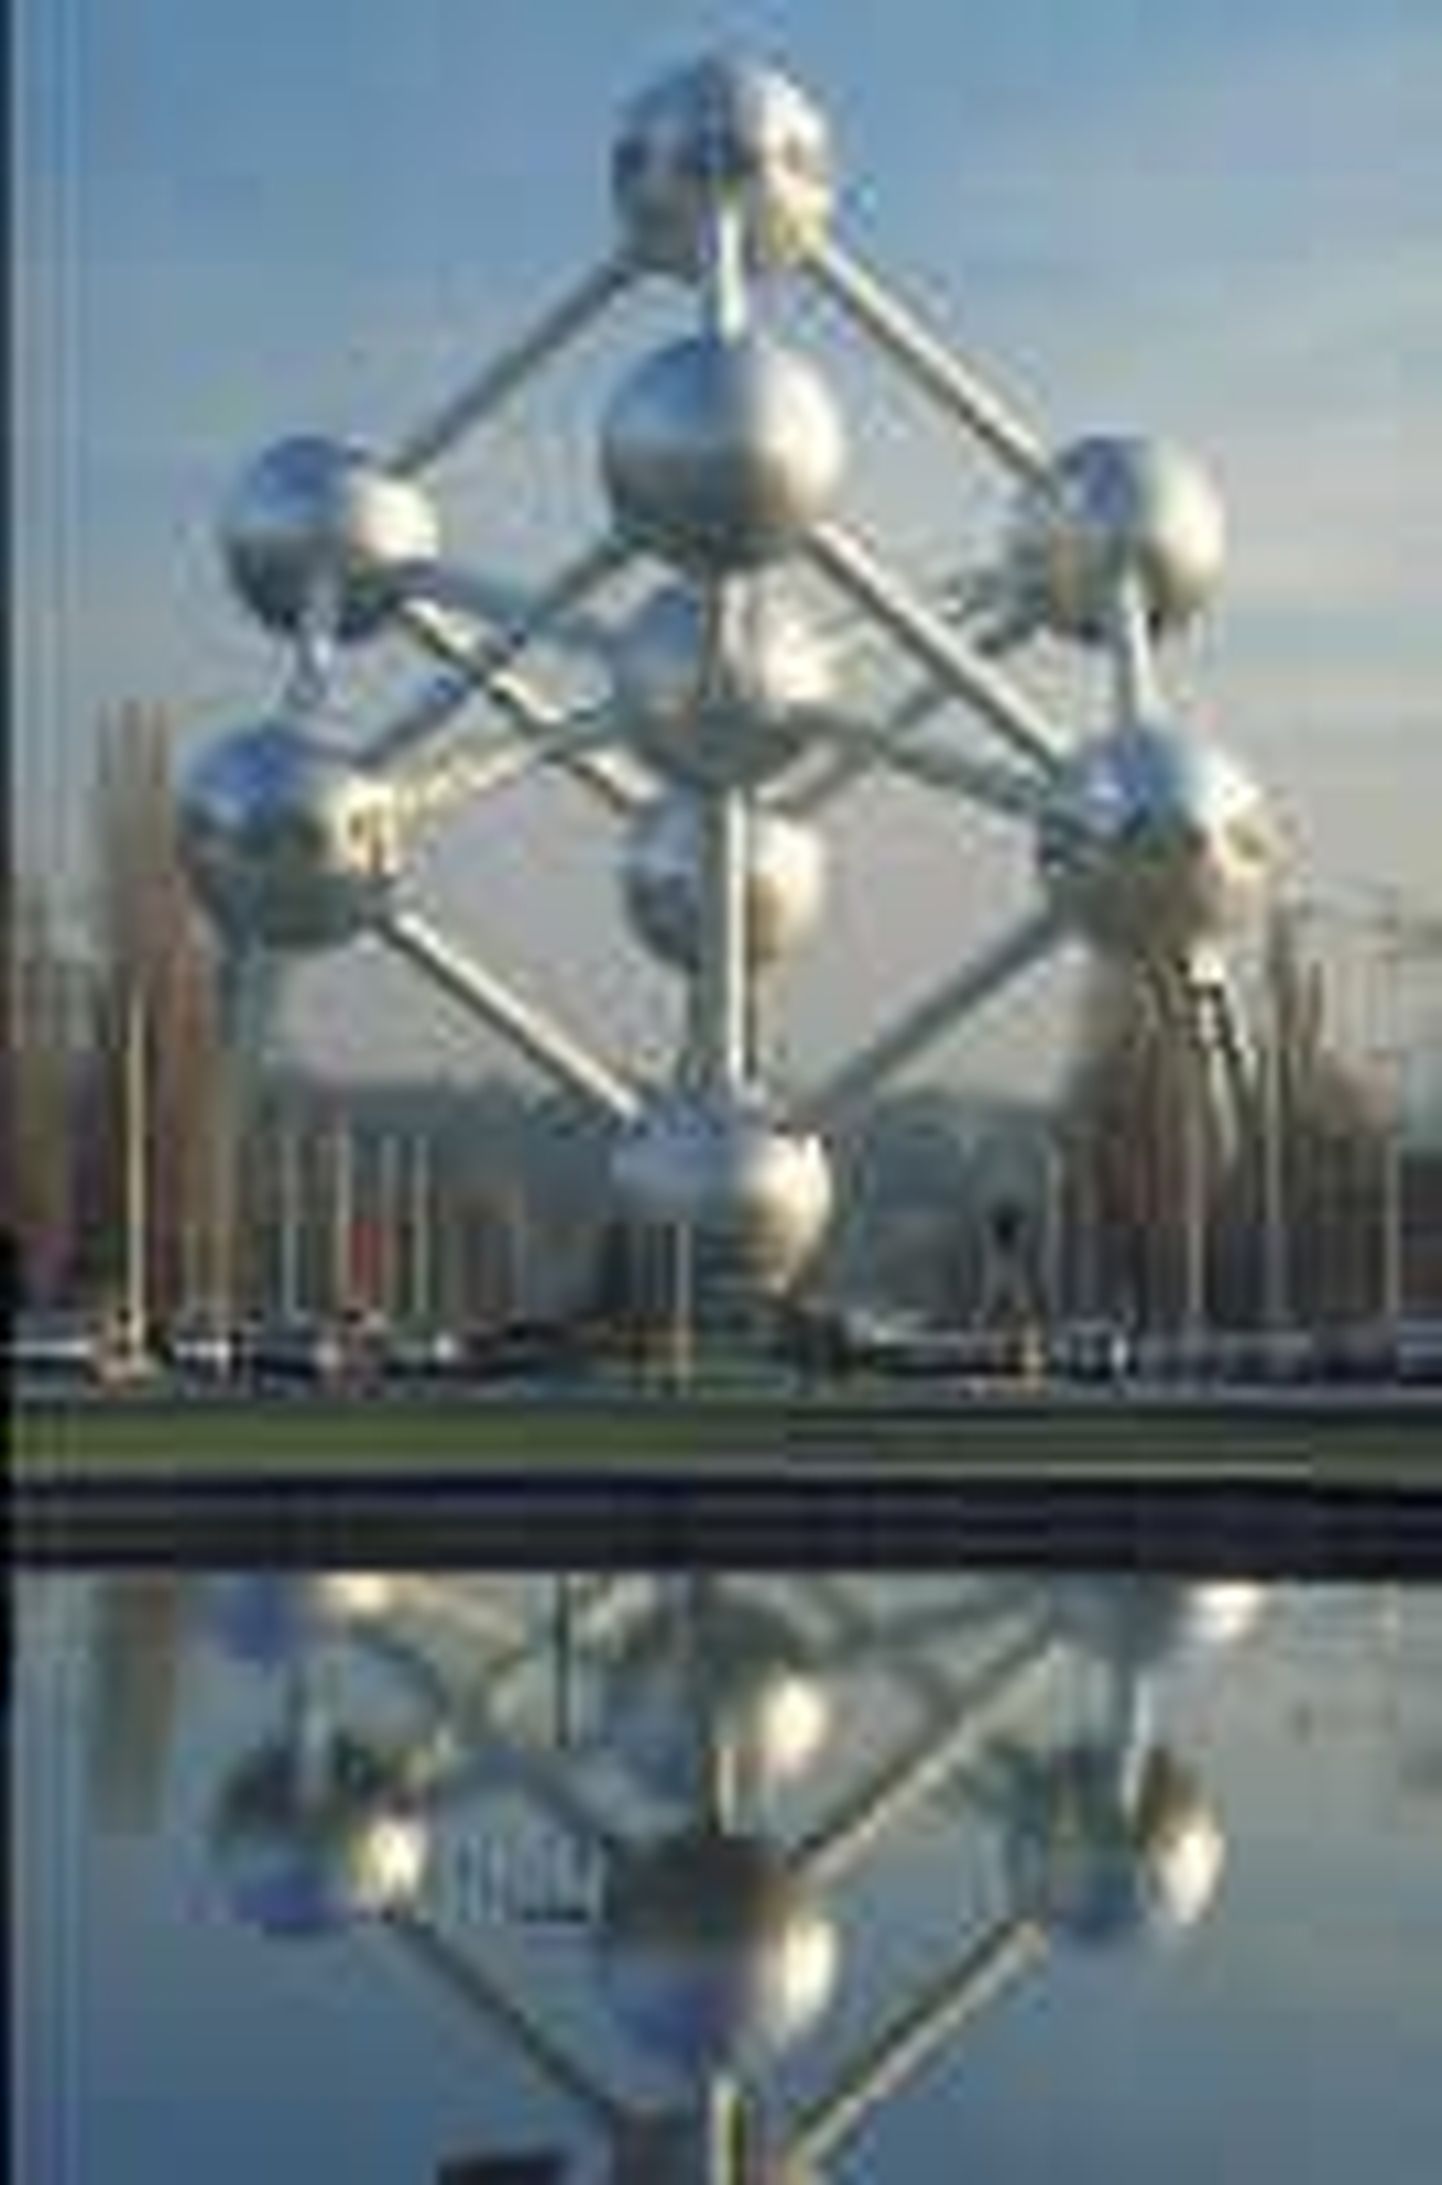 Belgiasse on reisinud tõenäoliselt kõik parlamendisaadikud, sest seal asub Euroliidu pealinn Brüssel koos mitmete tähtsate organisatsioonide peakorteritega. Pildil Brüsselis paiknev rauamolekuli kujuline ehitis, mis sümboliseerib tehnilist progressi.